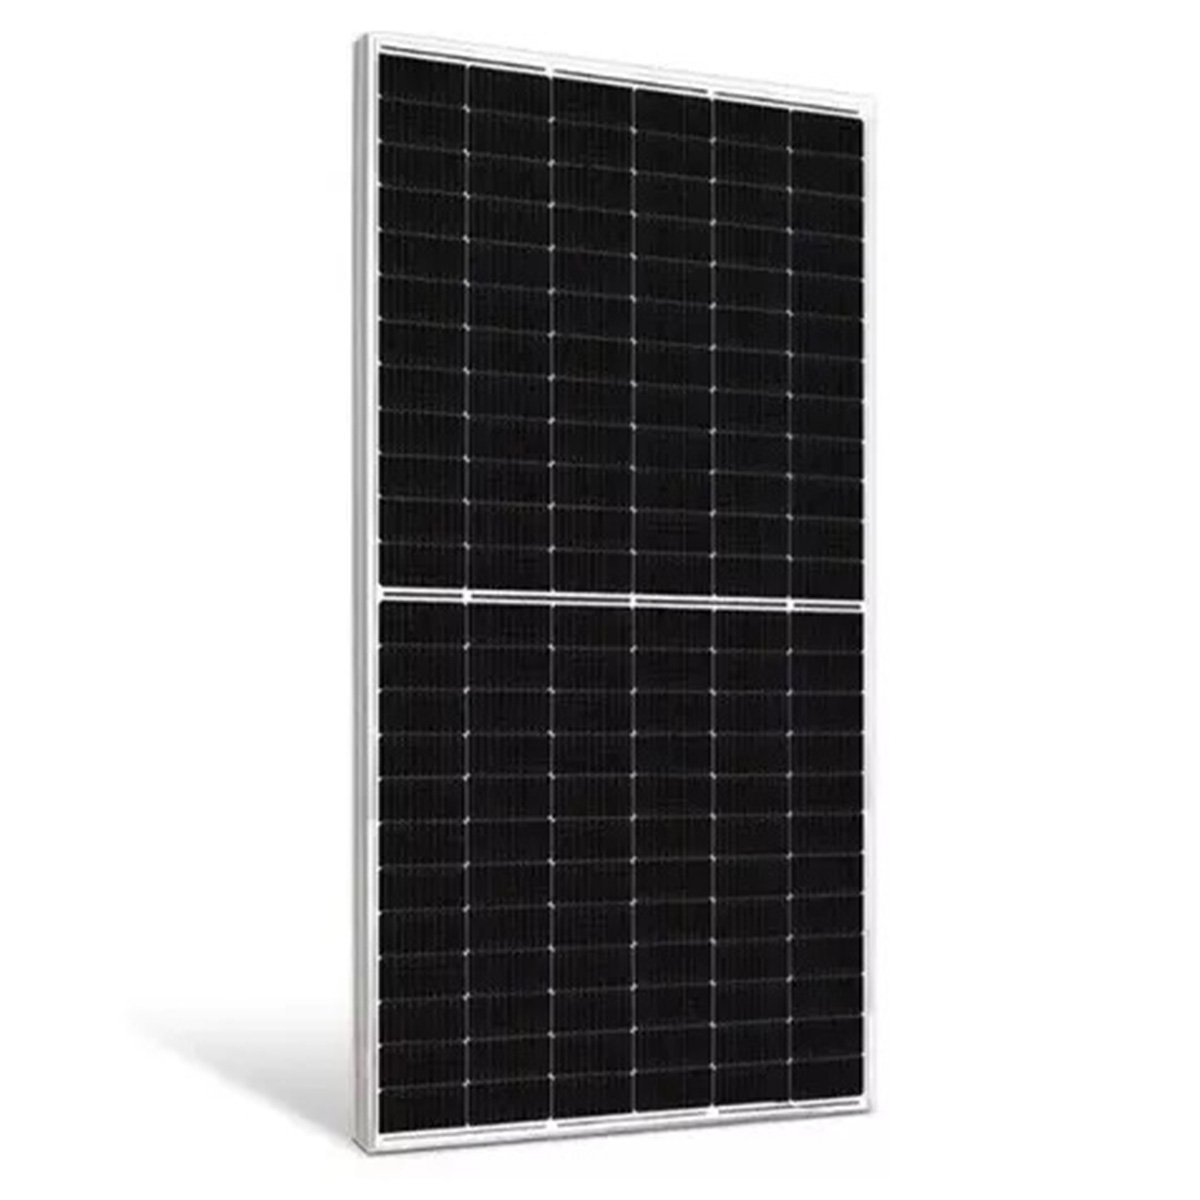 Painel Solar Placa Fotovoltaica 550W 2 Metros Monocristalino Energia Renovavel Economia Solar SA1821